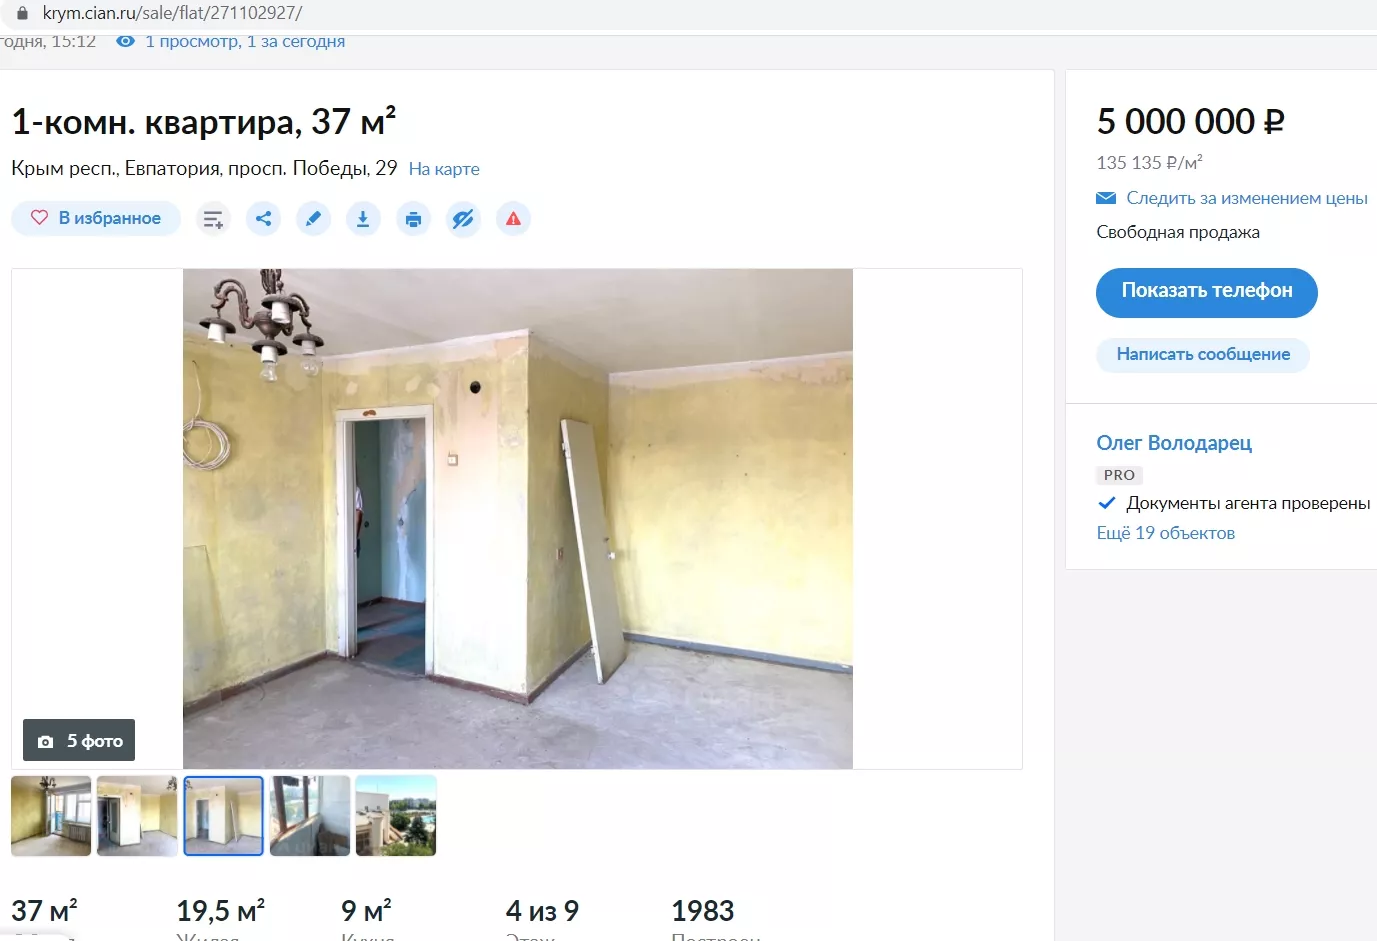 Квартира в Євпаторії за 5 мільйонів рублів